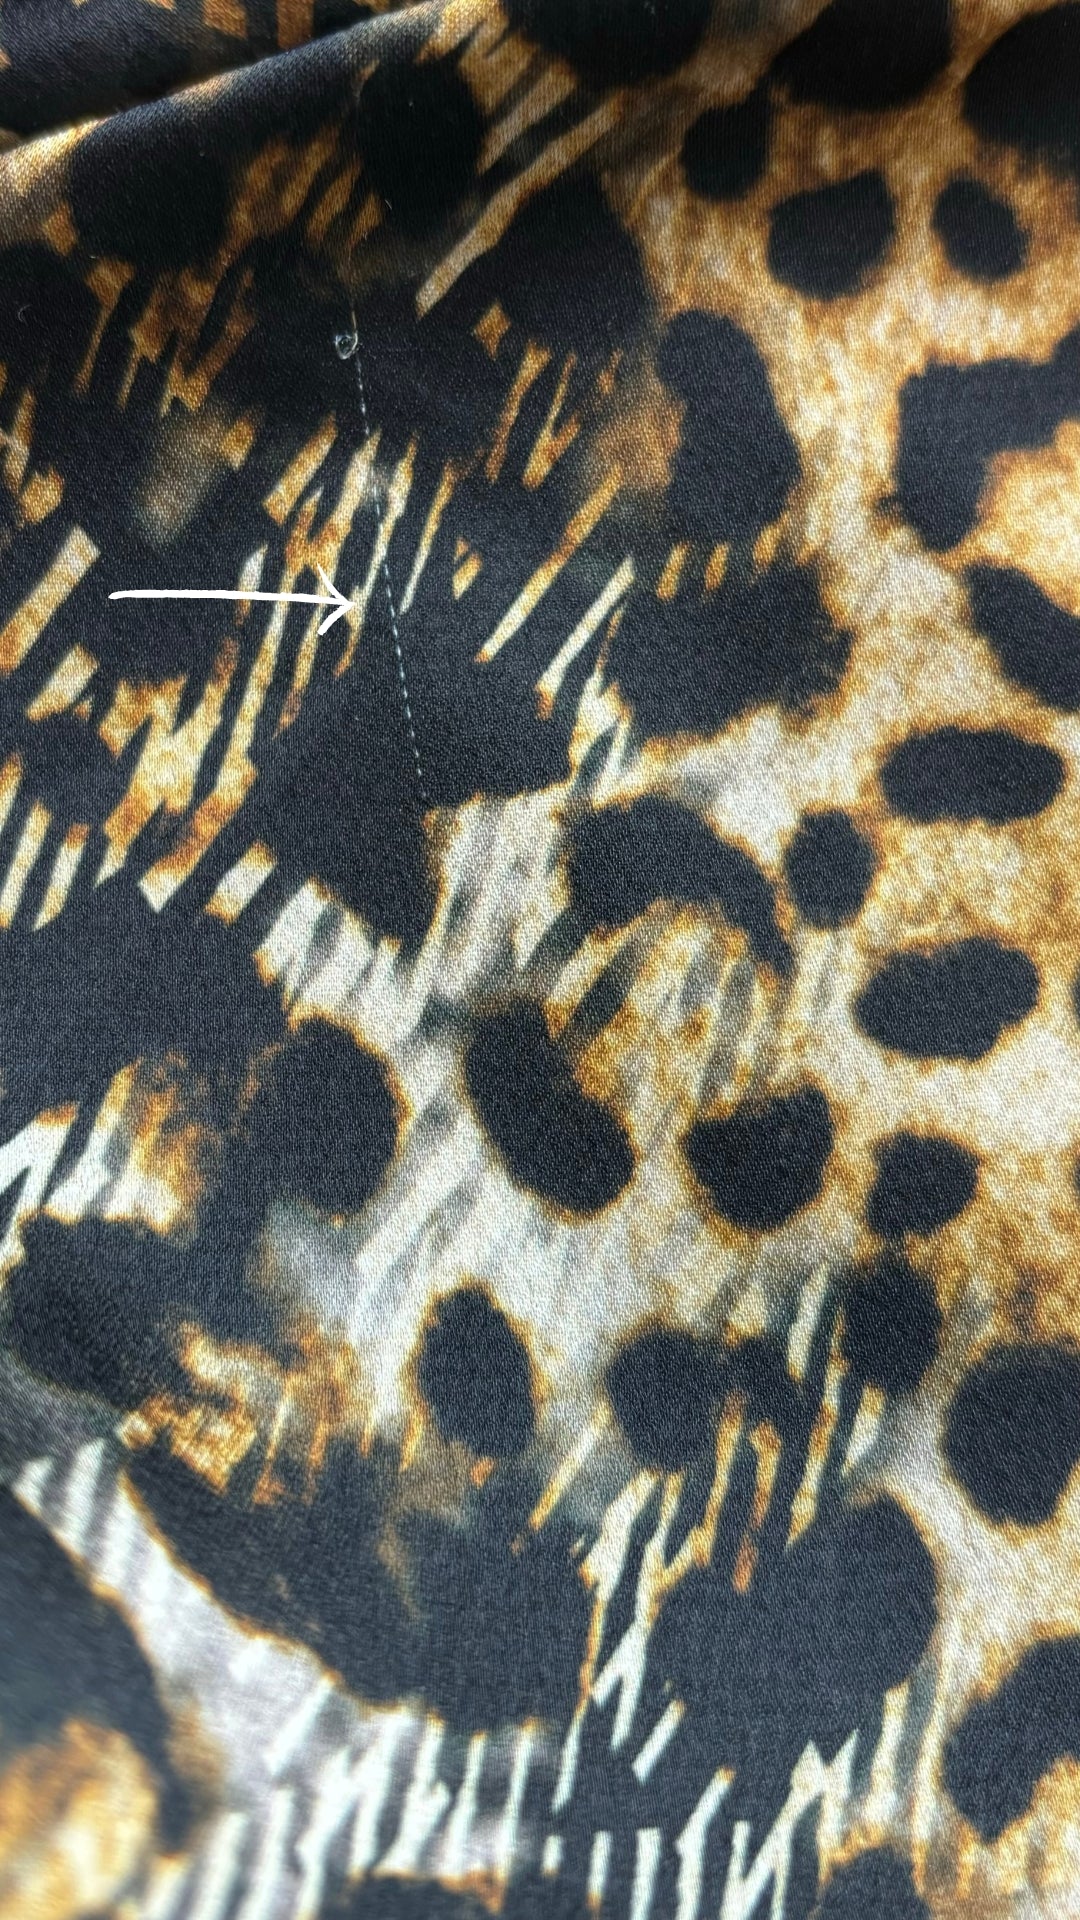 Chemisier tunique léopard Uchuu Studio, taille estimée m/l. Vue d'une petite ligne dans le tissu.